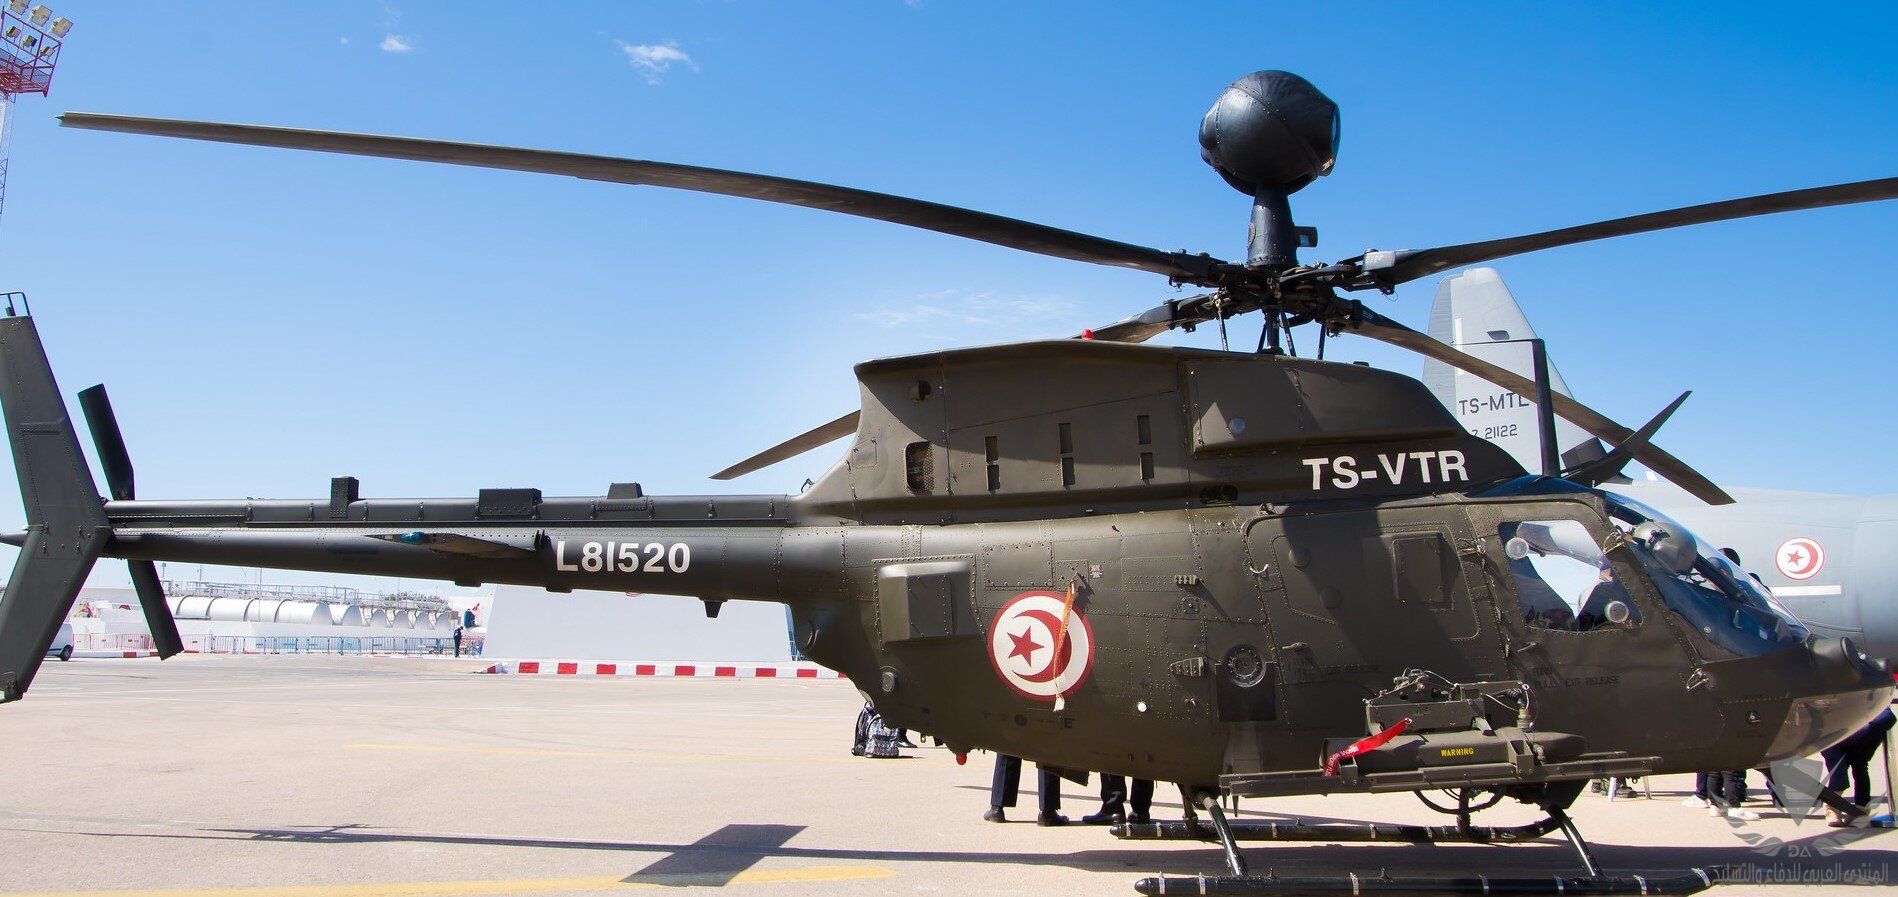 OH-58D Kiowa Warrior tunisian air force